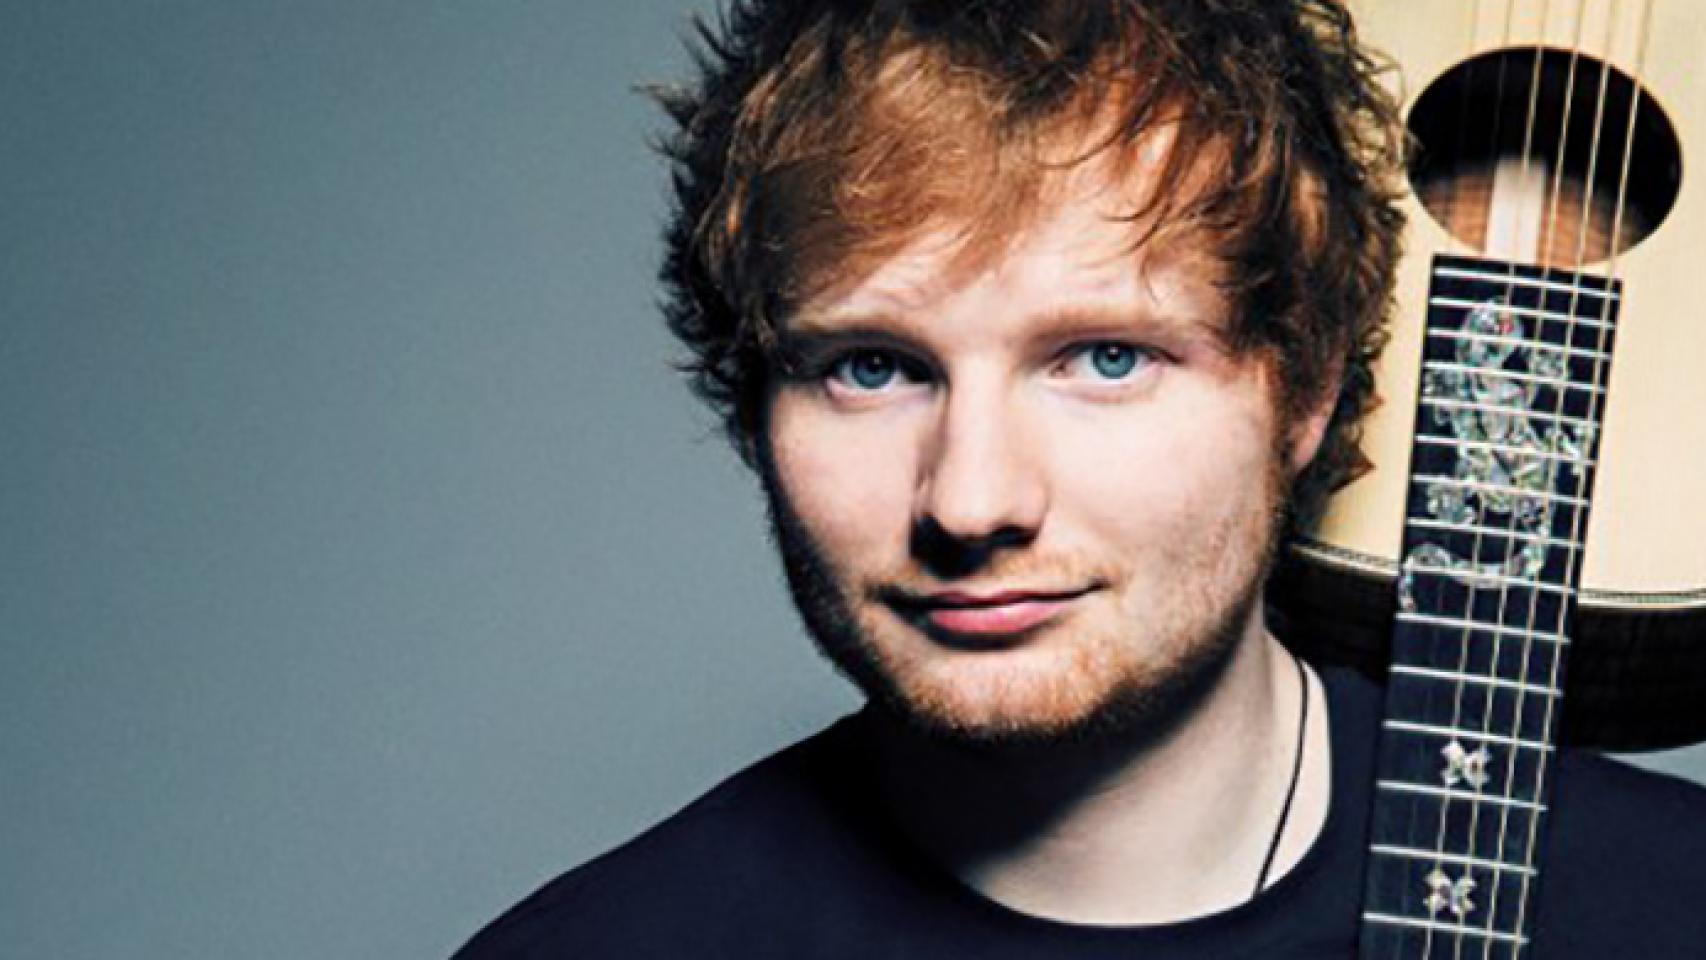 MTV cuenta la historia de Ed Sheeran en 'Storytellers'